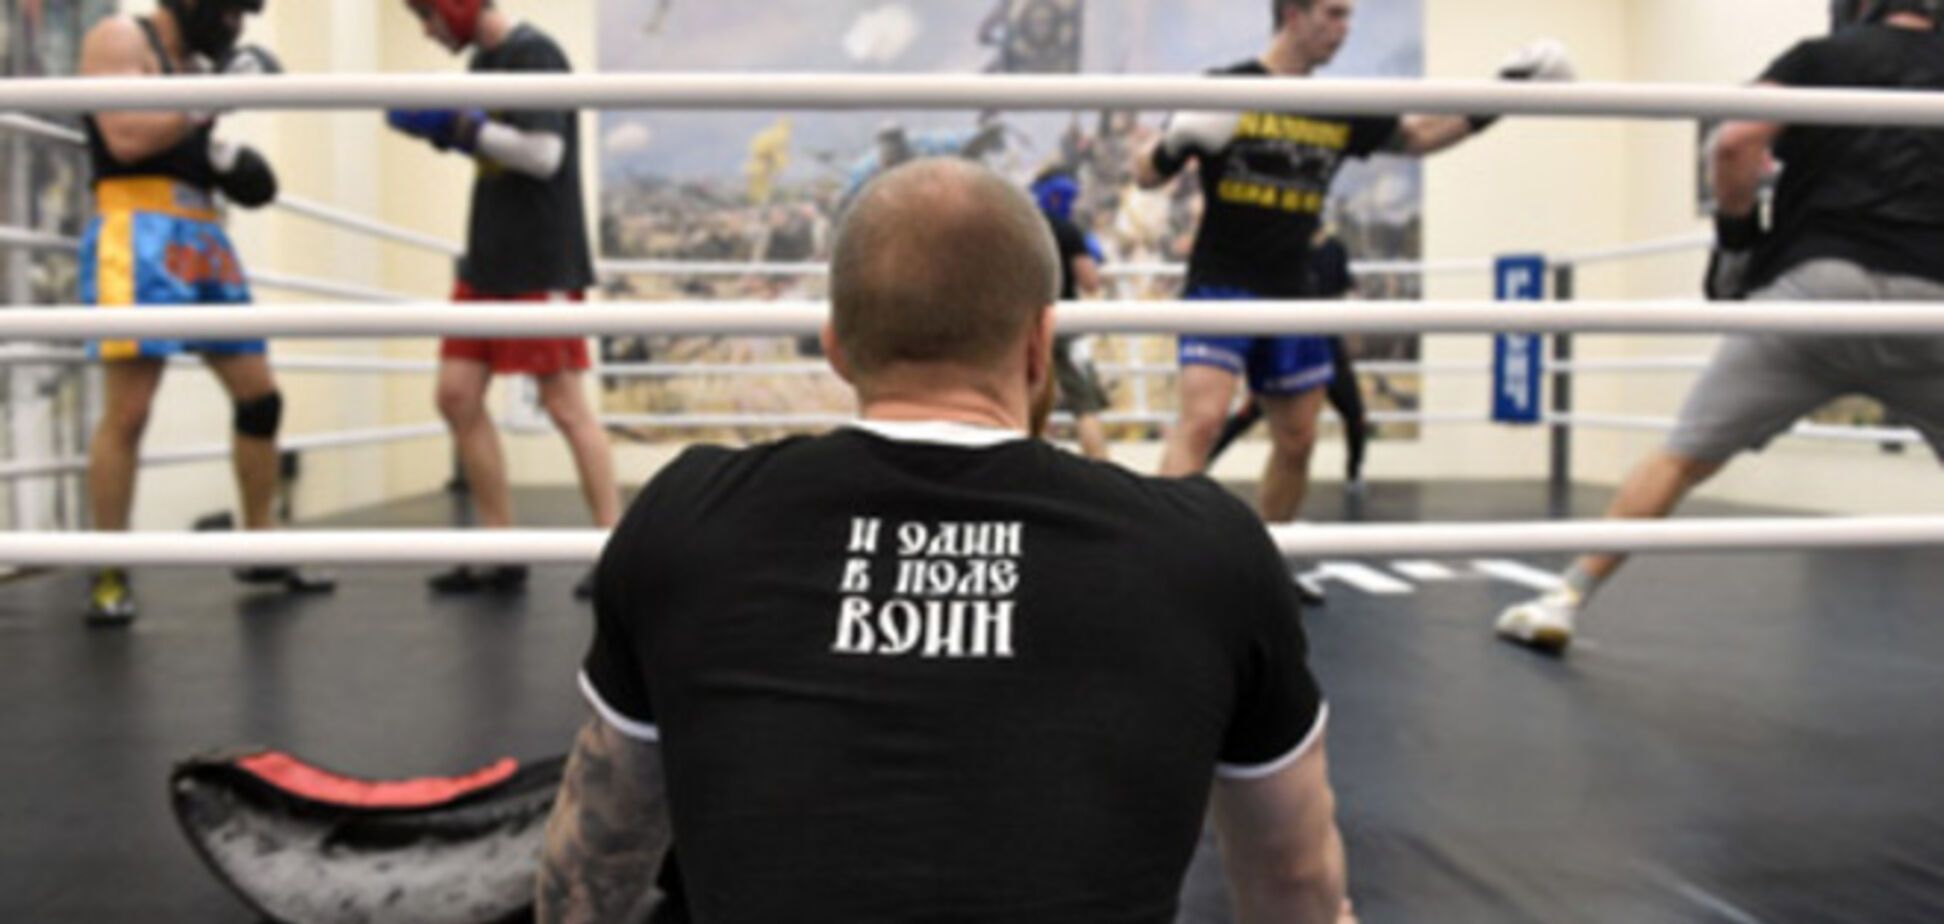 'ДНР' создает собственную федерацию бокса